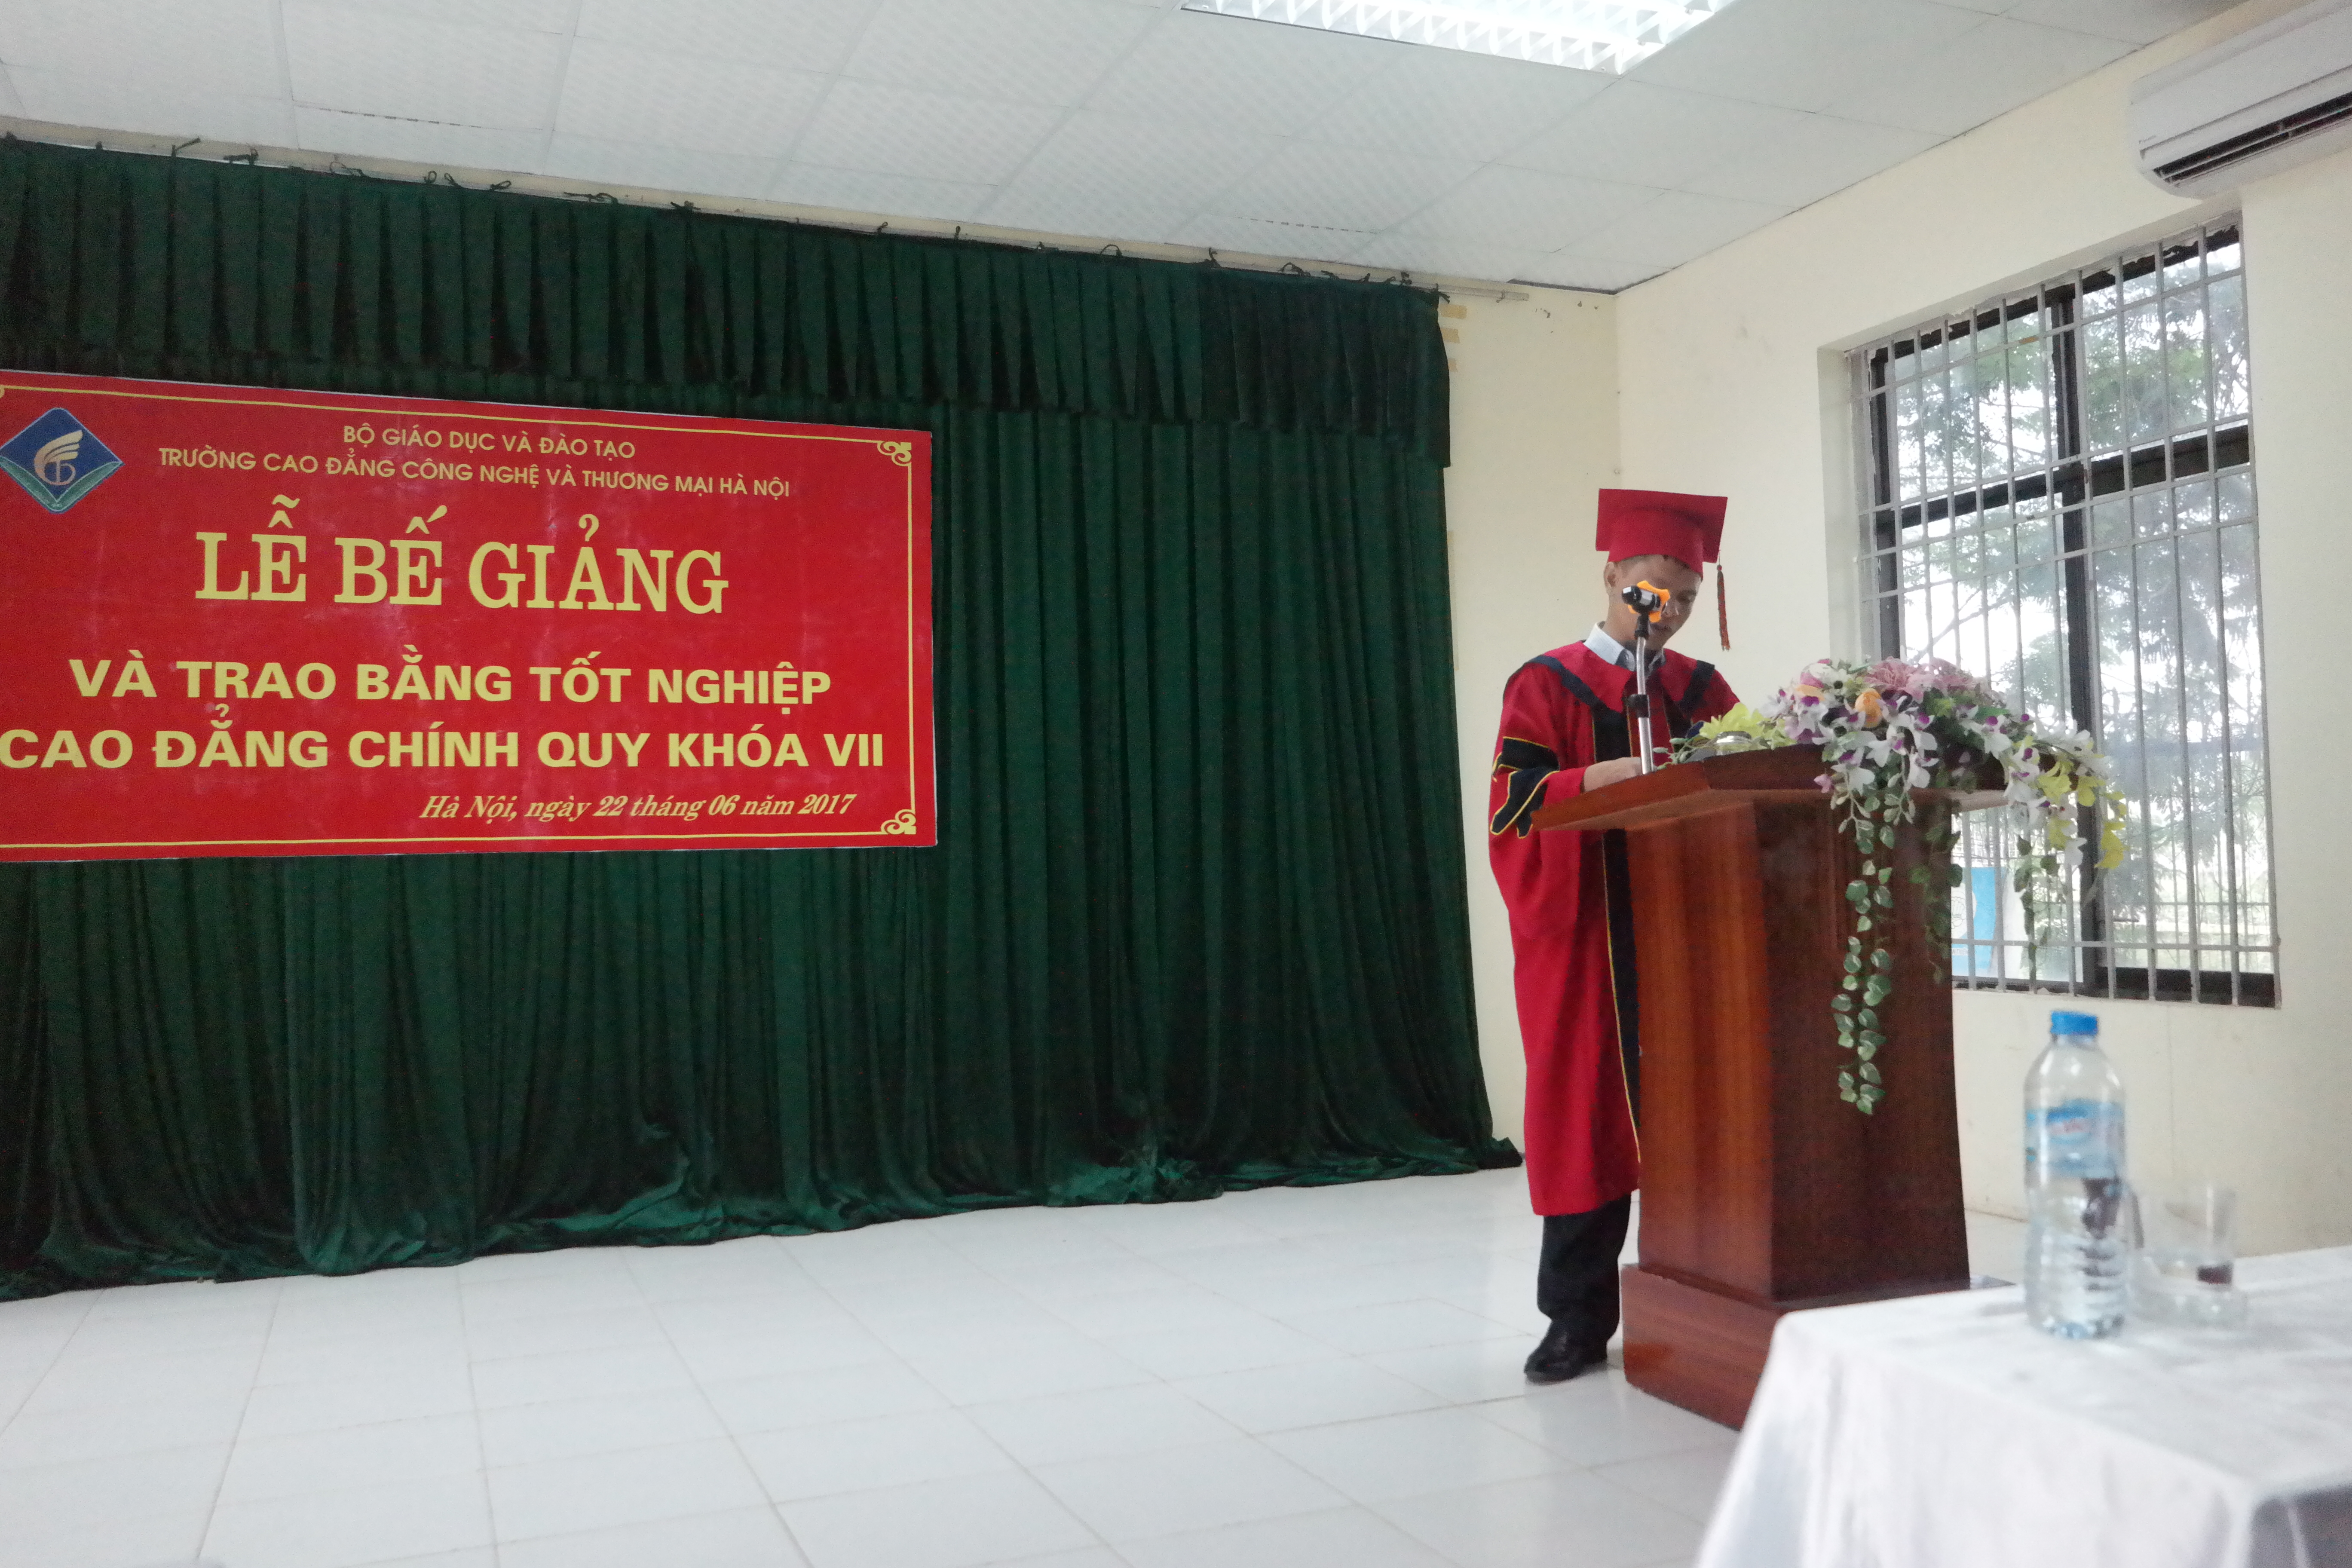 TS. Nguyễn Xuân Sang, Phó Hiệu trưởng Thường trực Nhà trường đọc diễn văn Bế giảng năm học 2016 - 2017 và trao bằng tốt nghiệp cho sinh viên Khóa VII